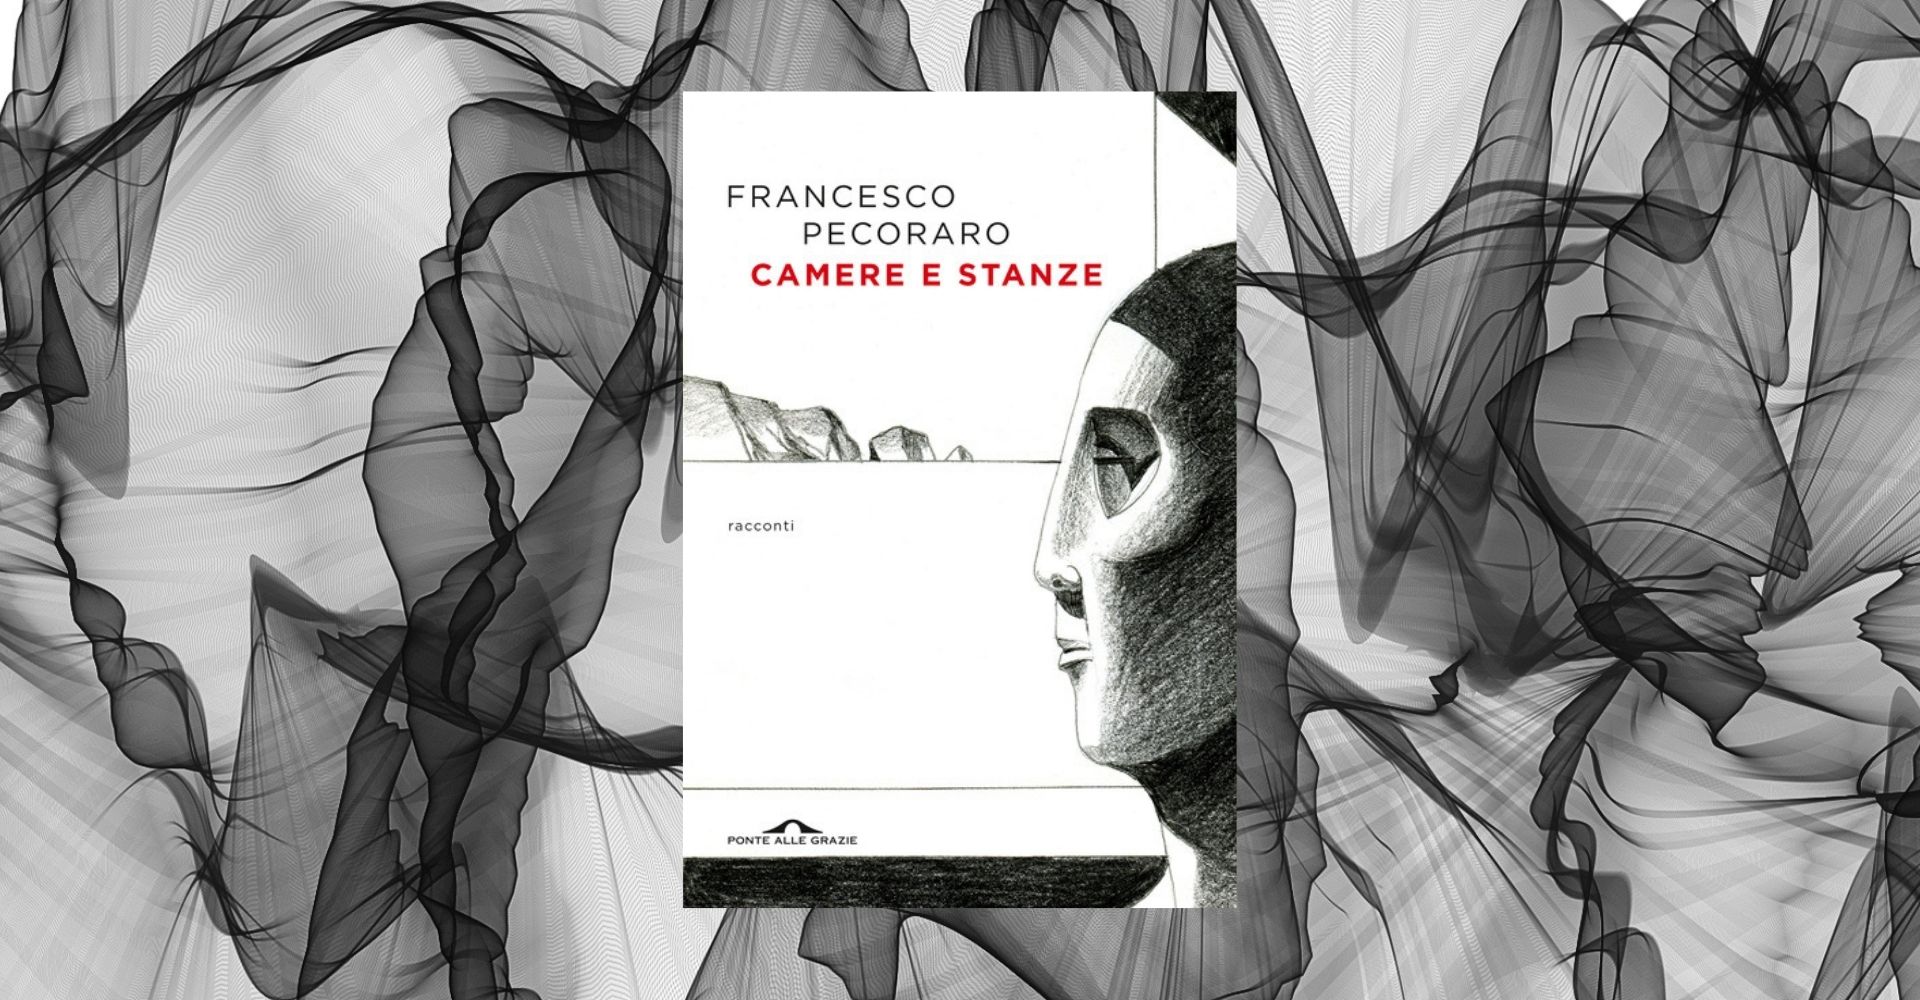 Un racconto inedito di Francesco Pecoraro, dalla raccolta “Camere e stanze”